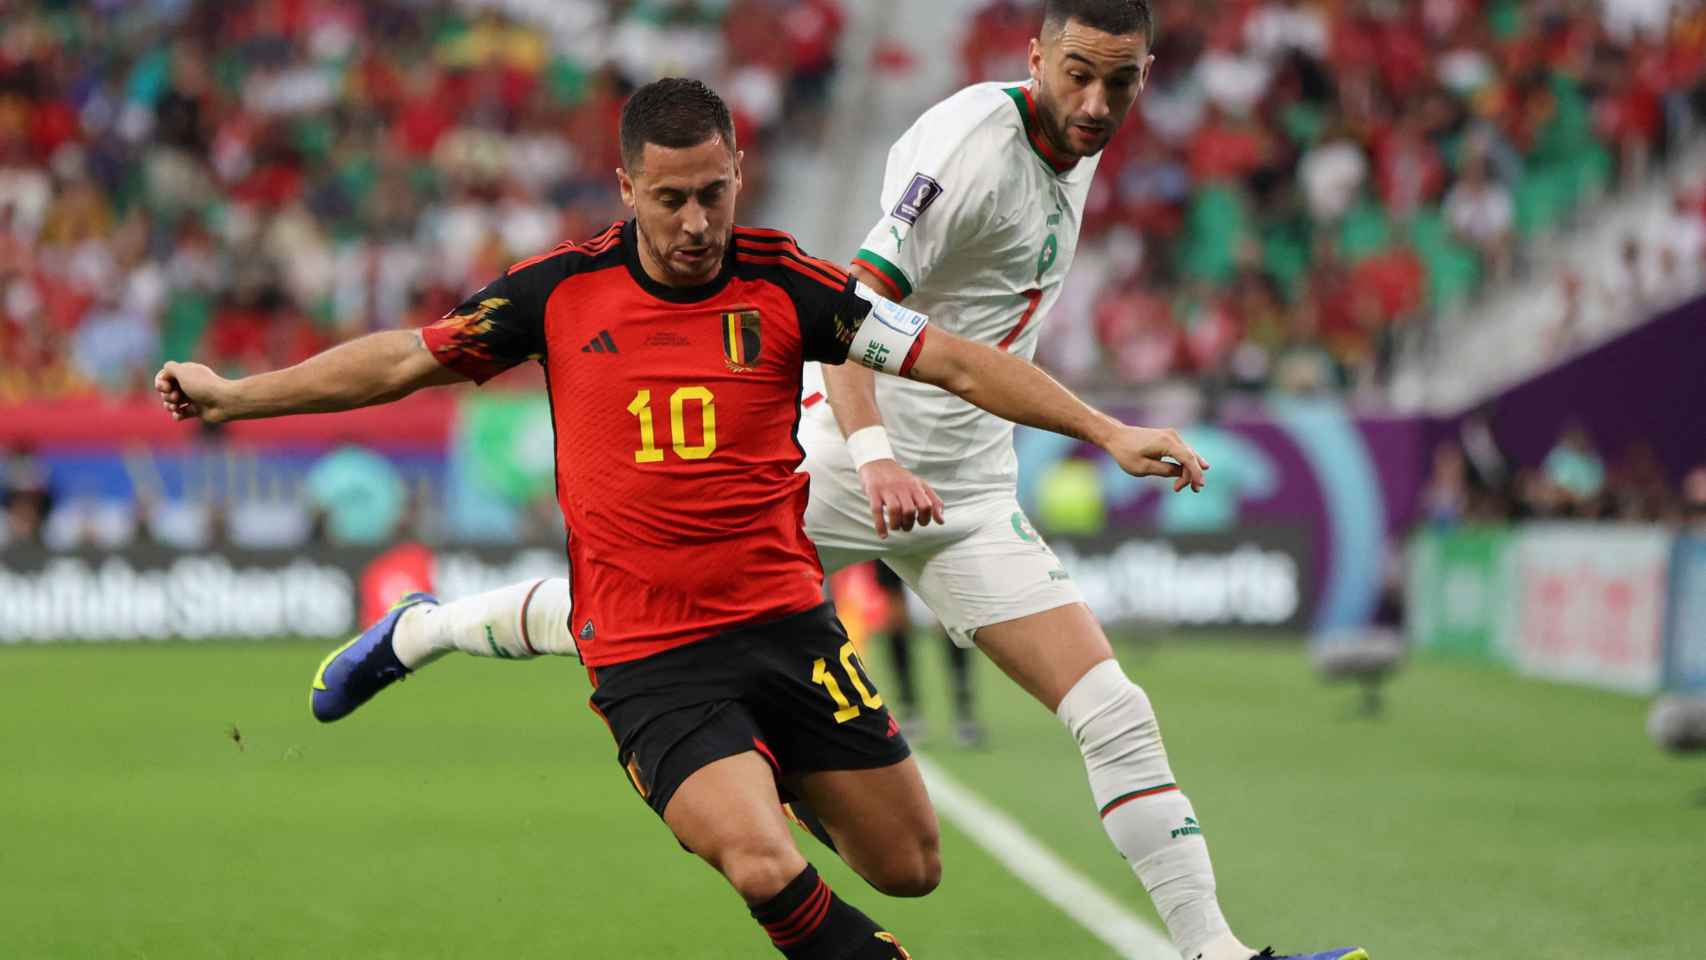 Eden Hazard y Hakim Ziyech, peleando por el balón en el Bélgica - Marruecos del Mundial de Qatar 2022